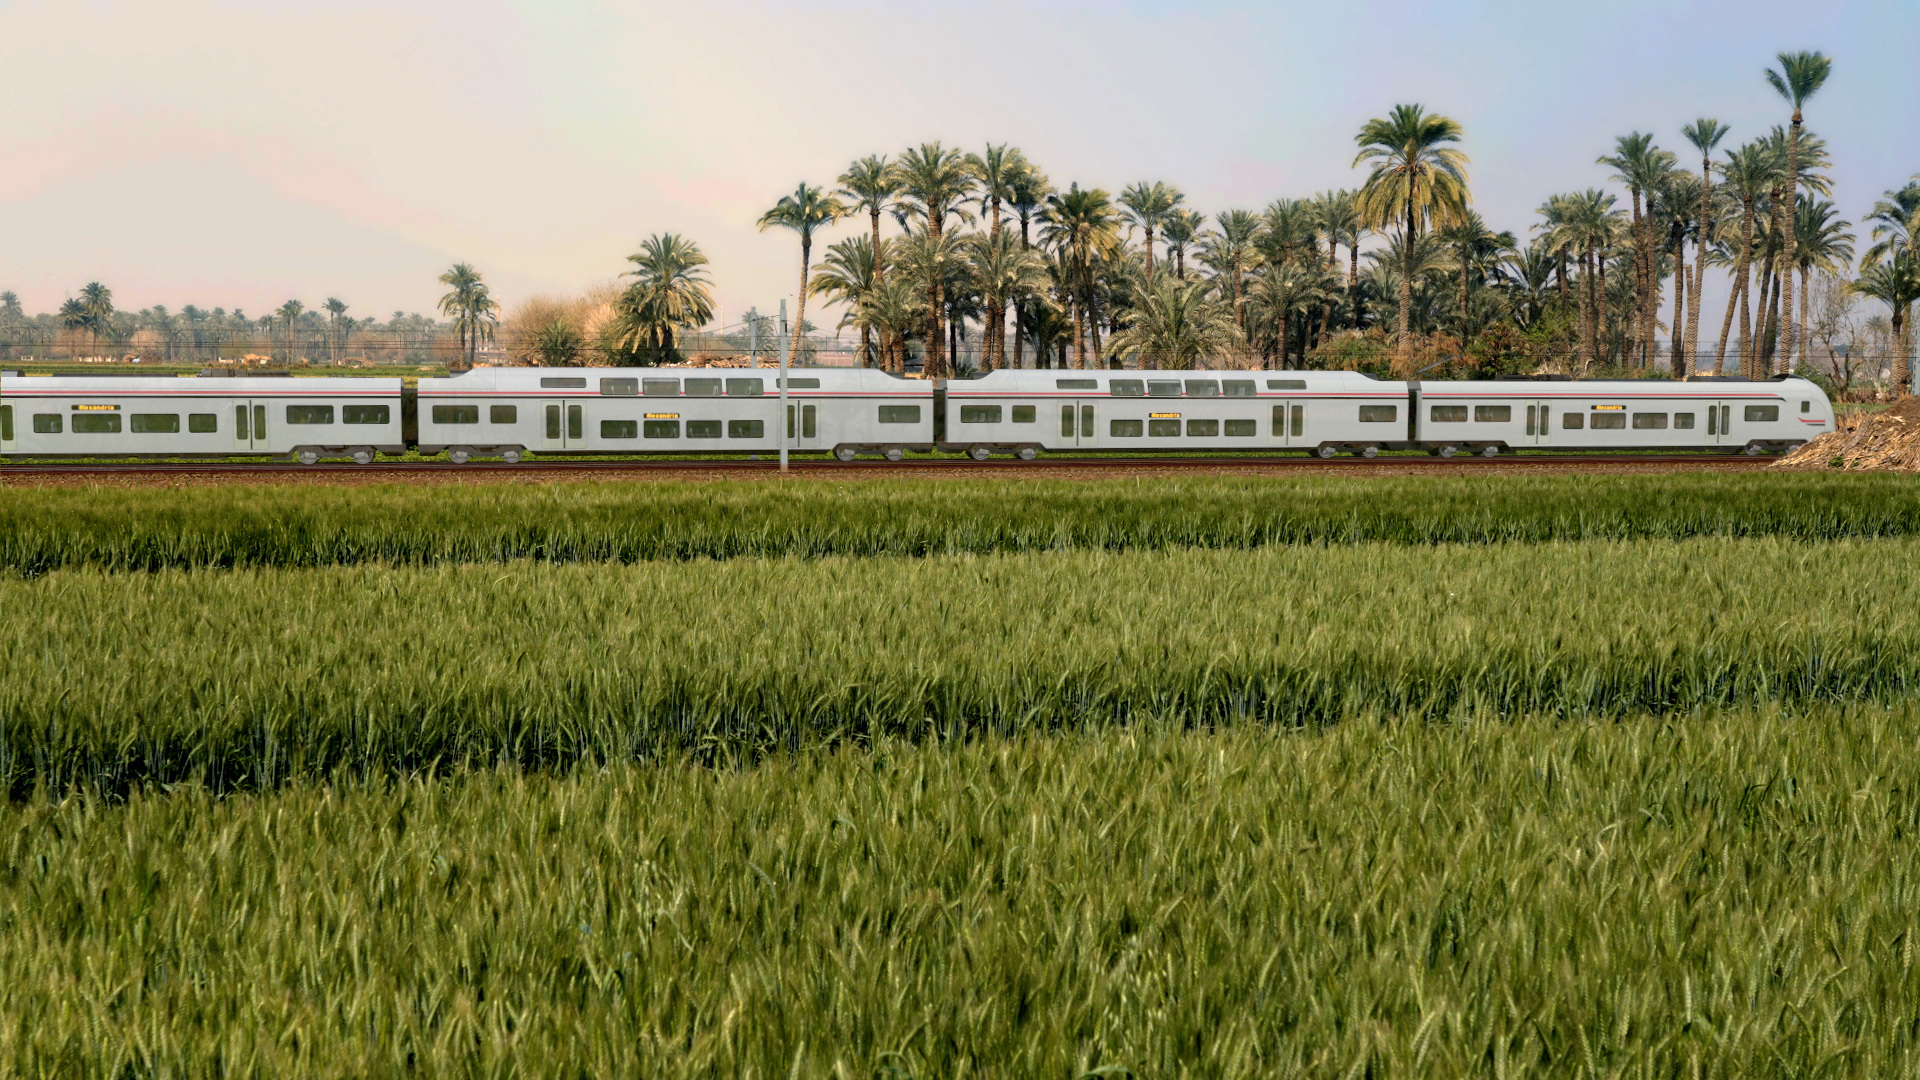 Die Illustration zeigt einen Siemens- Zug in Ägypten. | picture alliance/dpa/Siemens AG